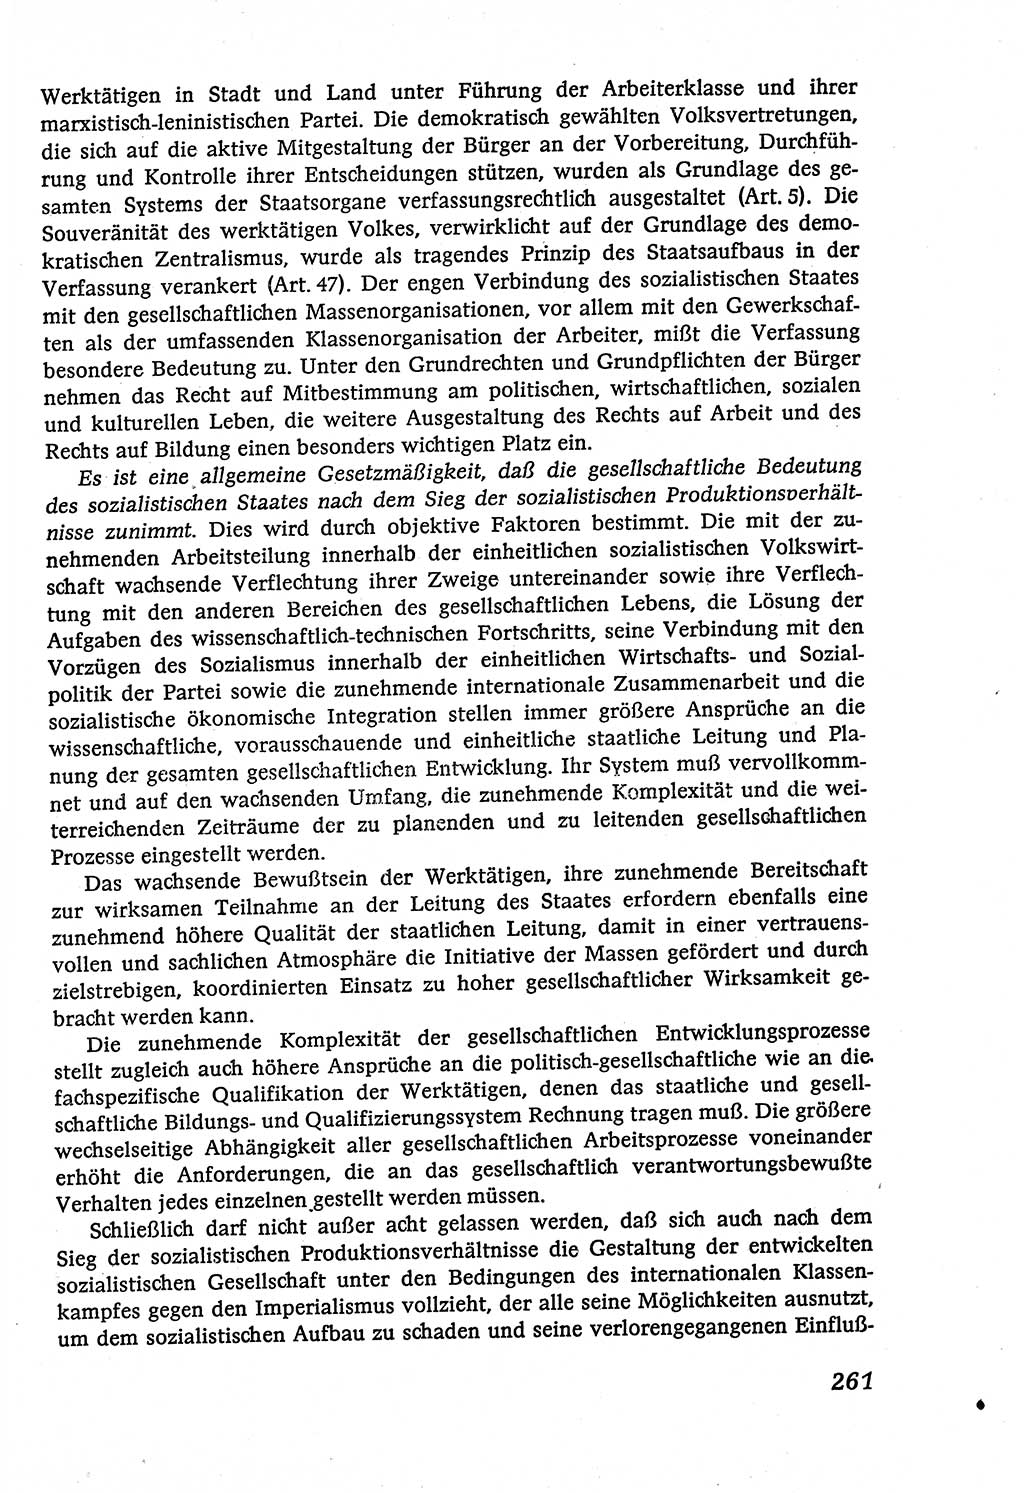 Marxistisch-leninistische (ML) Staats- und Rechtstheorie [Deutsche Demokratische Republik (DDR)], Lehrbuch 1980, Seite 261 (ML St.-R.-Th. DDR Lb. 1980, S. 261)